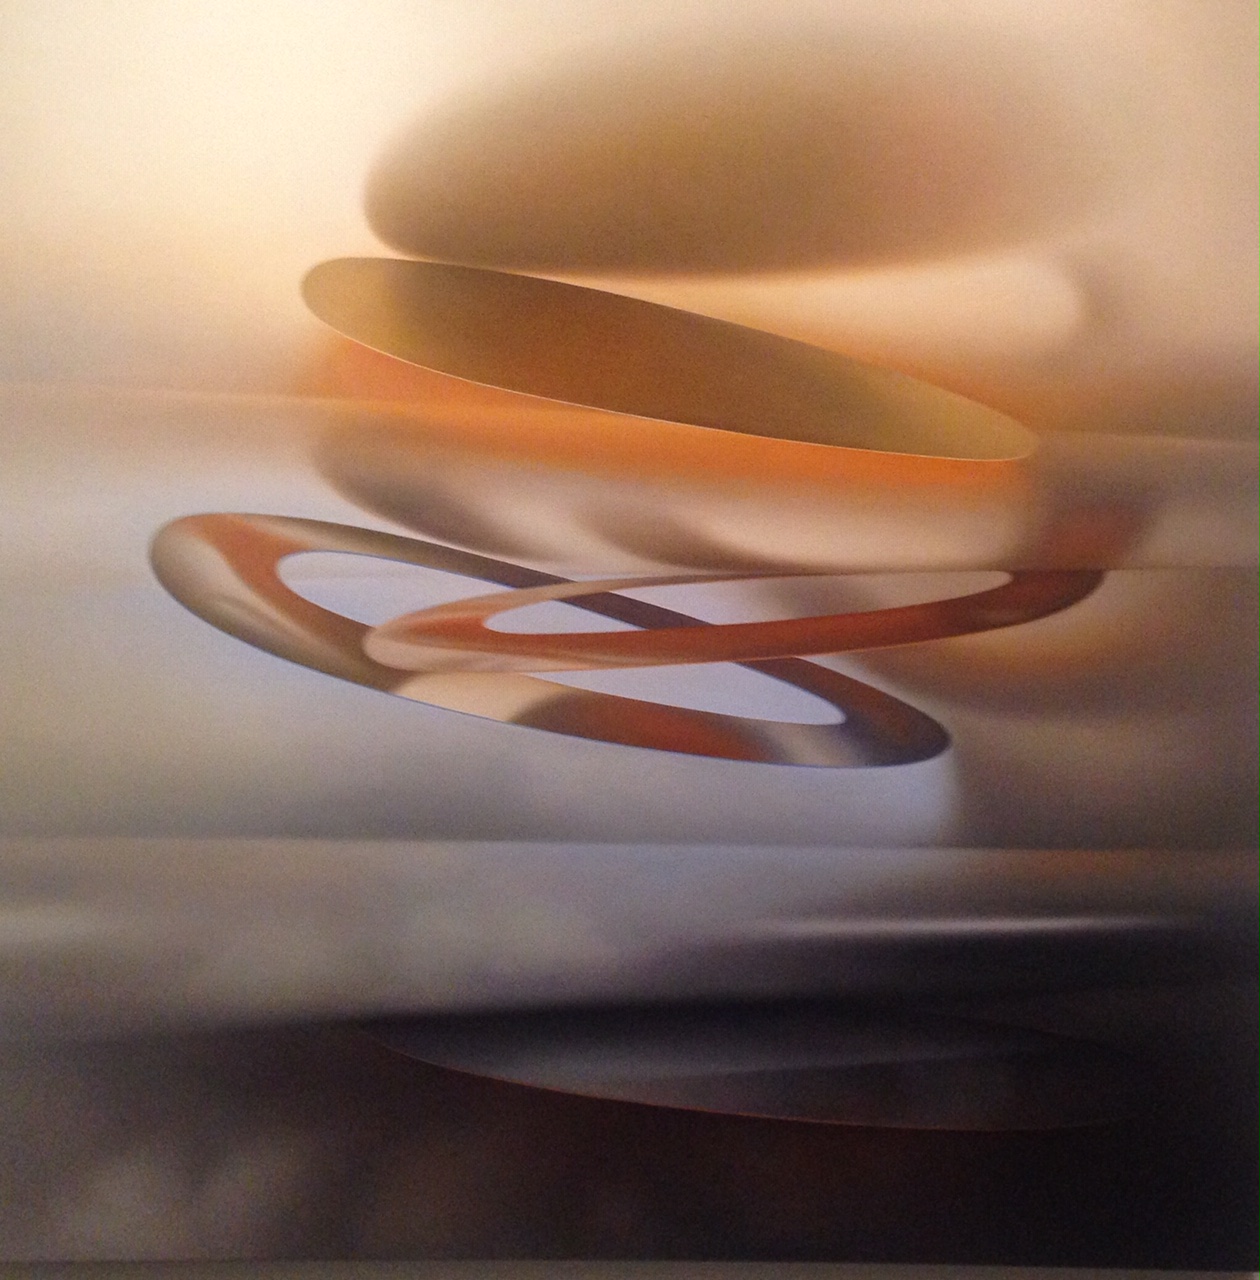 Roger Byrt, Sky, 2005, oil on linen, 168 x 168 cm $12,500